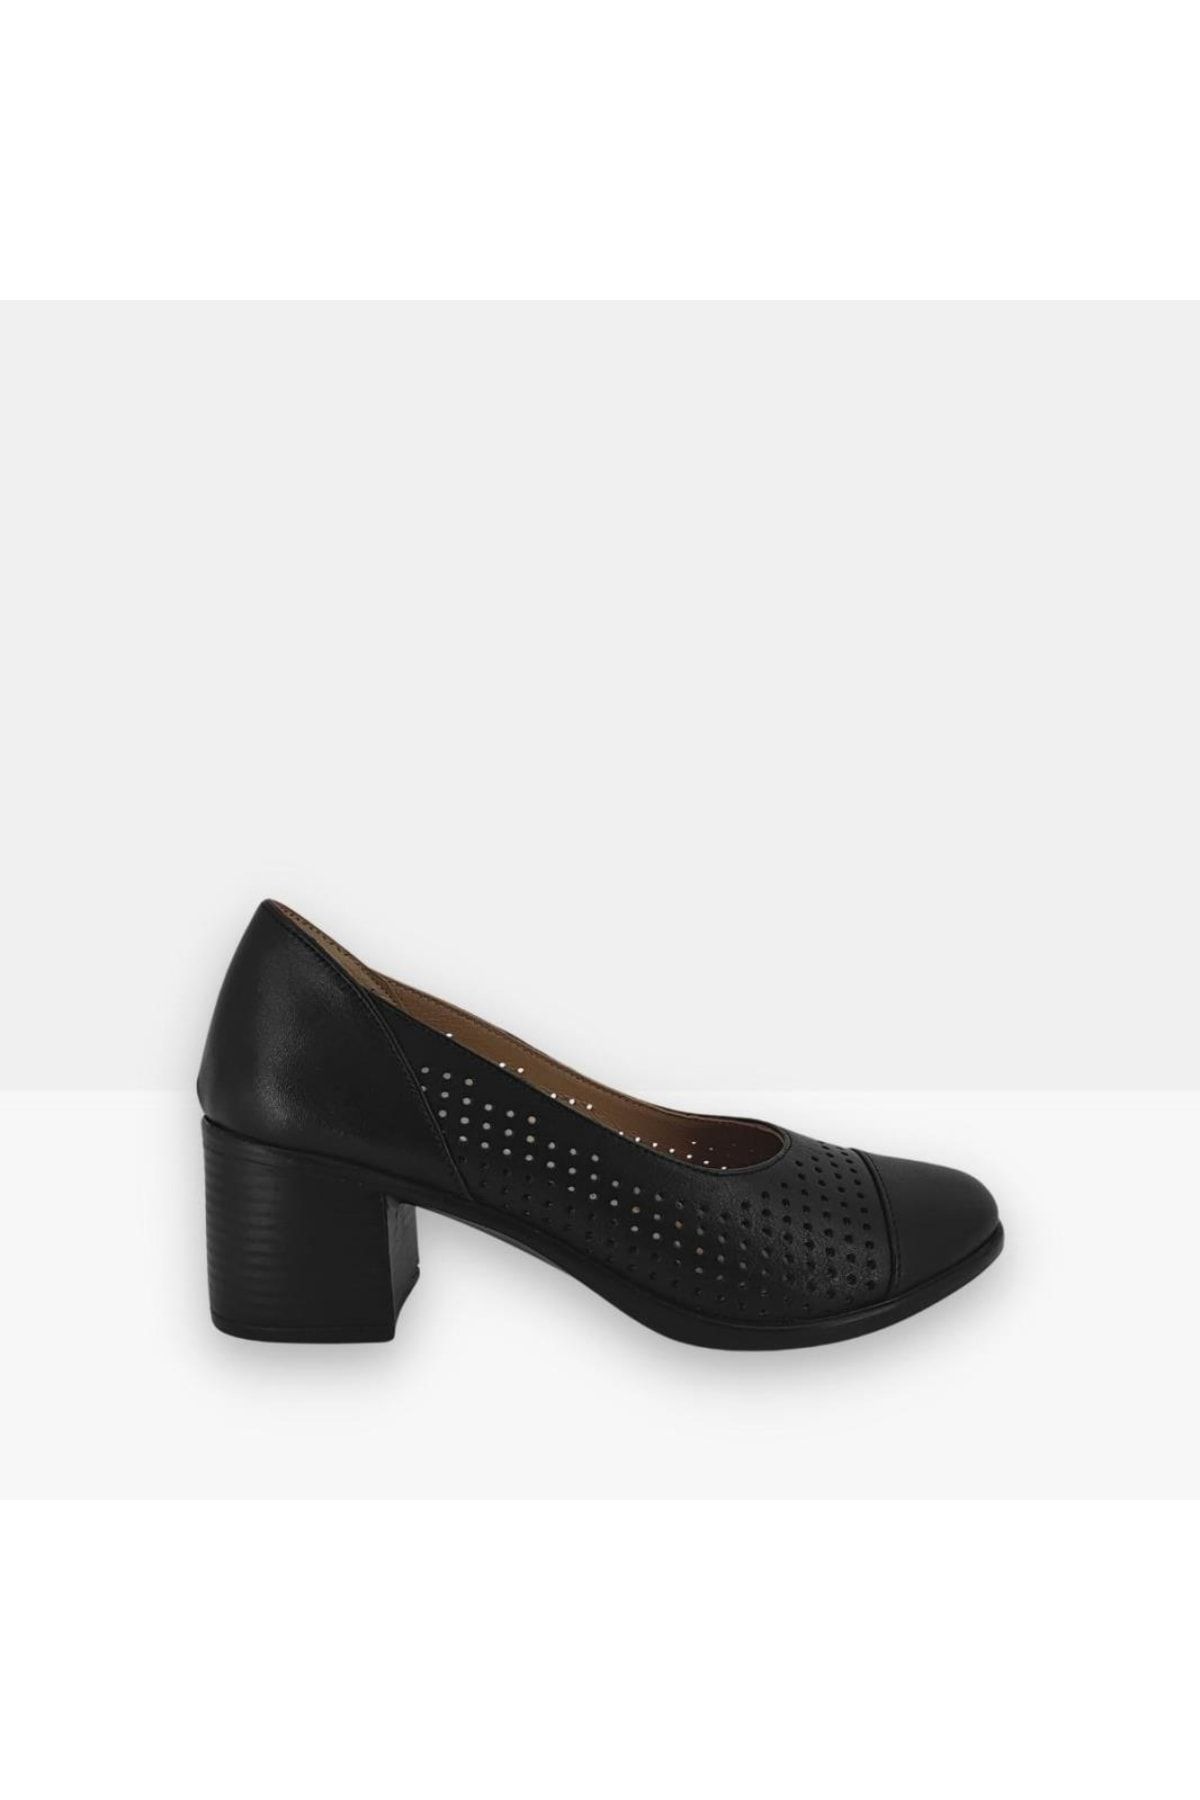 Hobby /ellanor 2301 Hakiki Deri Topuklu Kadın Ayakkabı Modeli